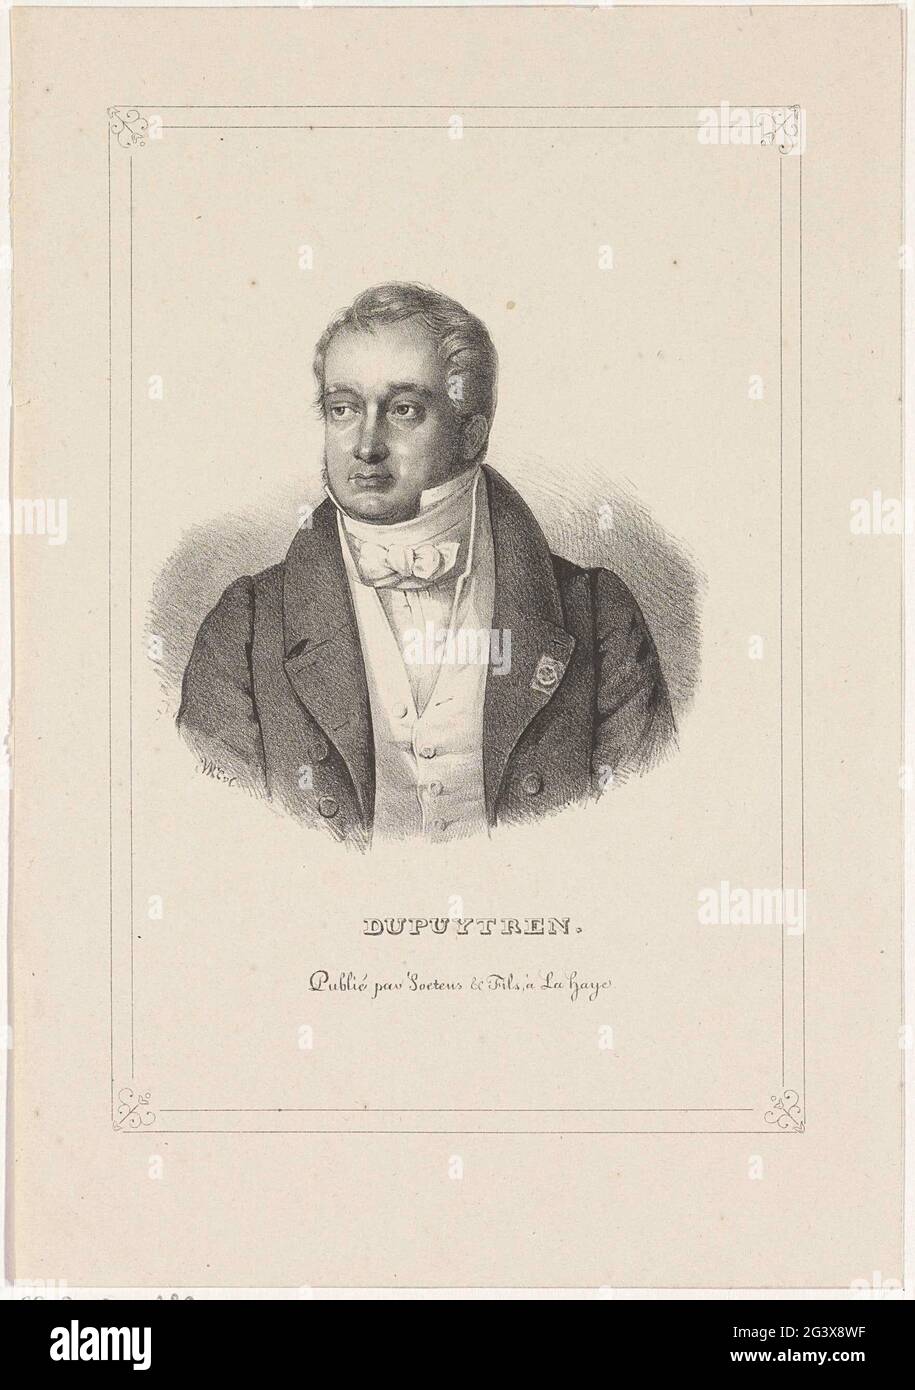 Porträt von Guillaume Dupuytren. Das Porträt trägt eine strikte Krawatte und einen hohen Kragen. Er trägt eine Auszeichnung auf dem Revers seiner Jacke. Sein Name unter dem Porträt. Stockfoto